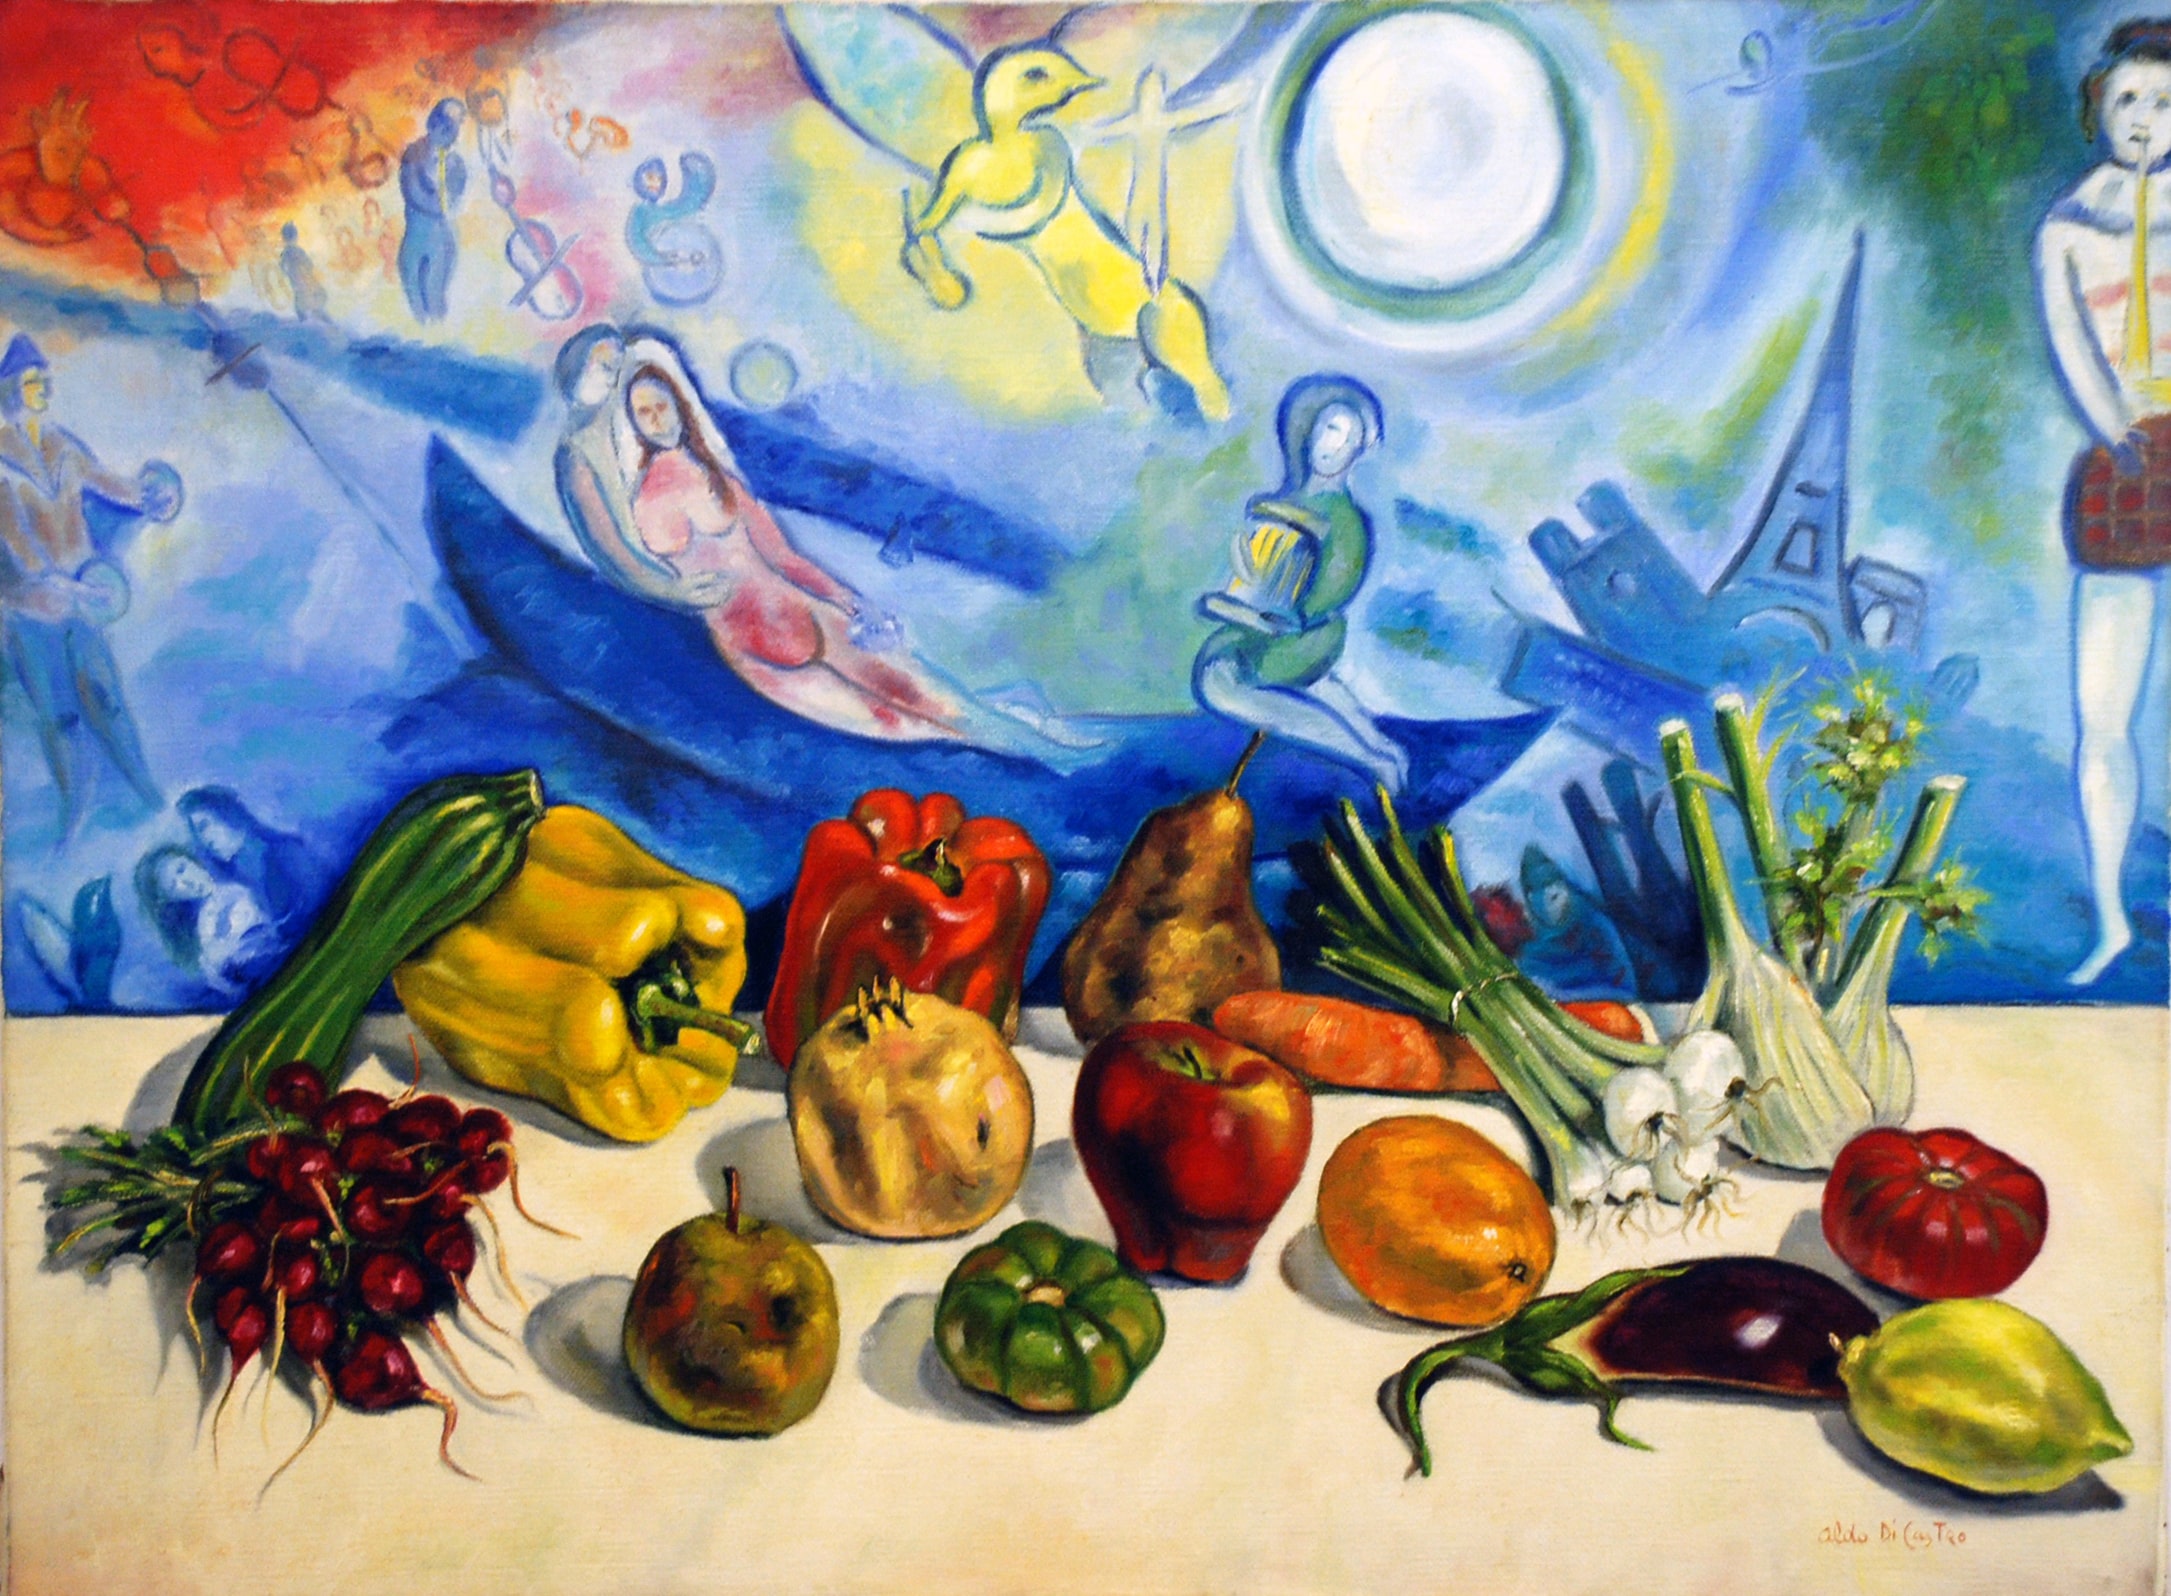 Natura morta ed omaggio a Macc Chagall - olio su tela - 1975 - 60x80